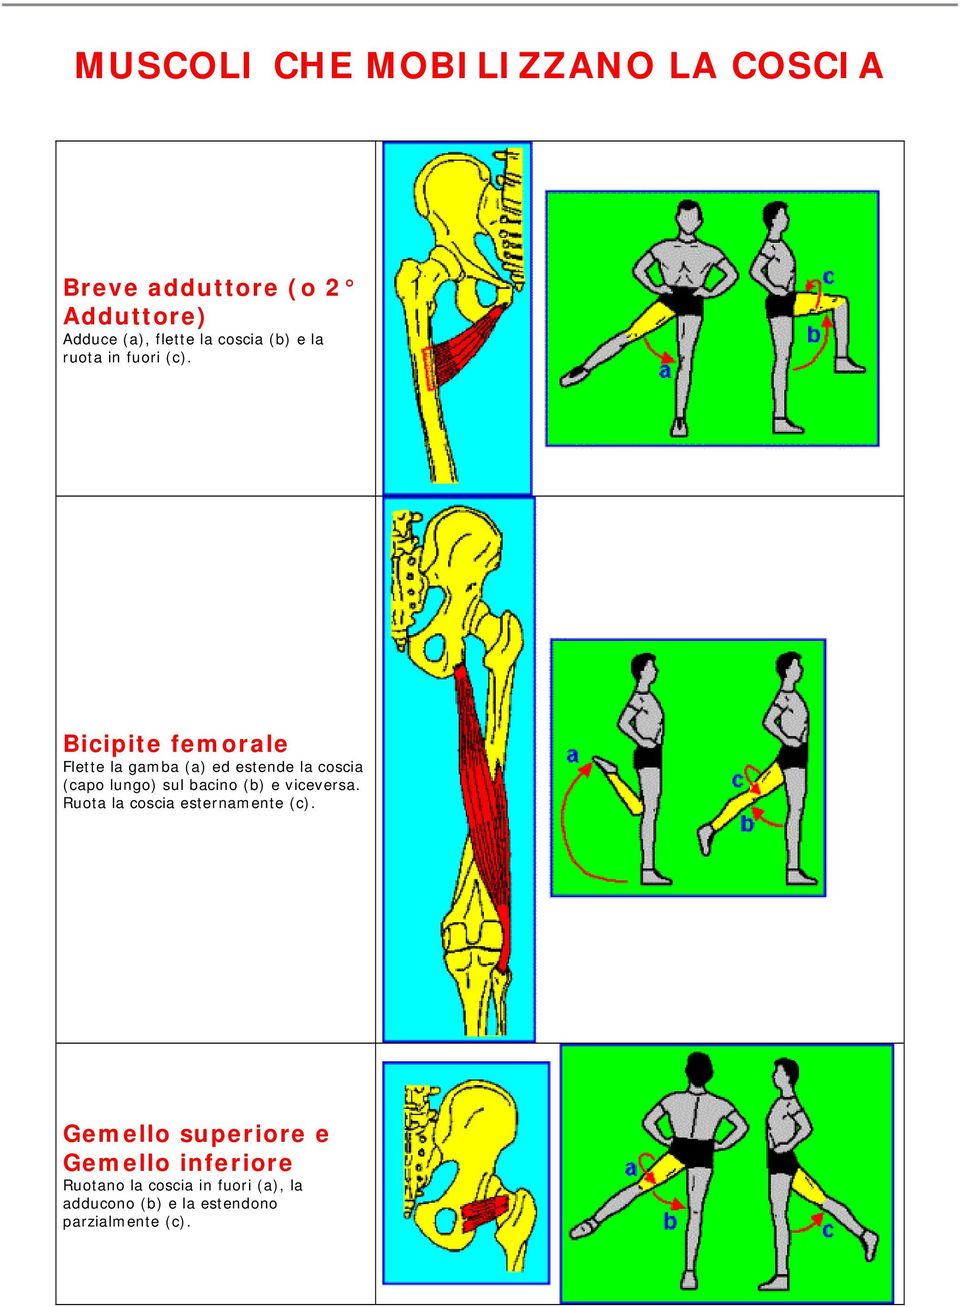 Bicipite femorale Flette la gamba (a) ed estende la coscia (capo lungo) sul bacino (b) e